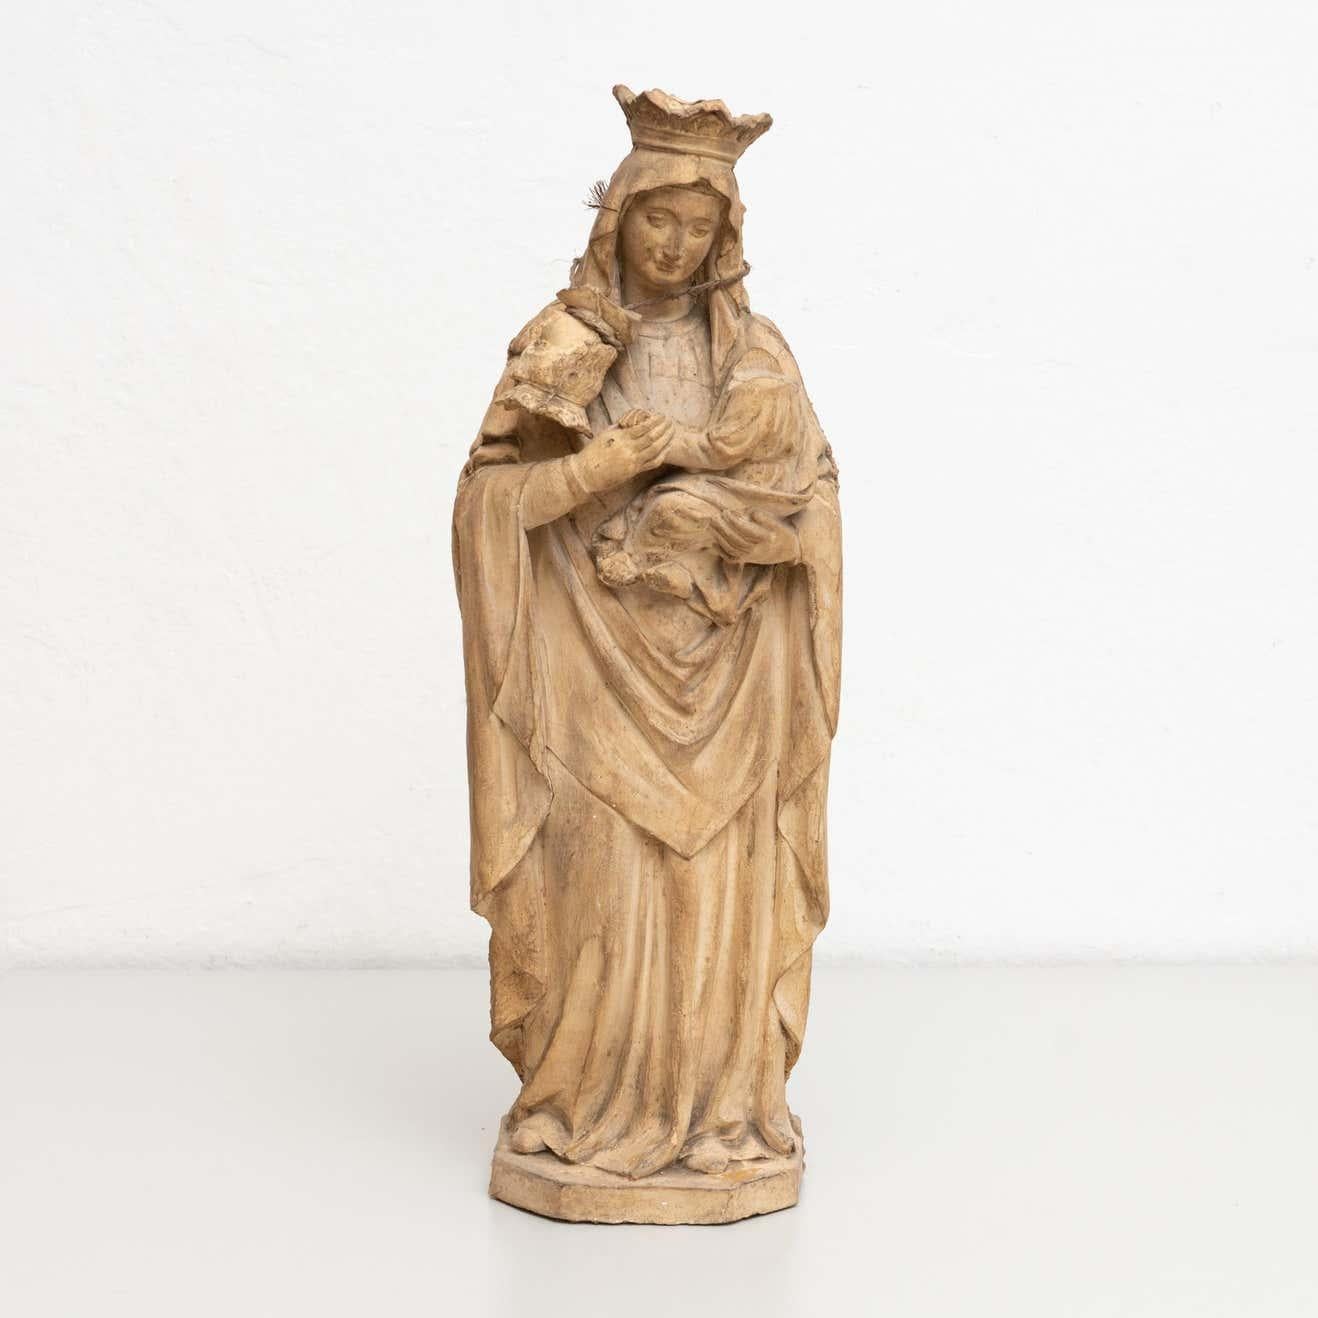 Figurine religieuse traditionnelle en plâtre représentant une vierge.

Fabriqué dans un atelier catalan traditionnel à Olot, en Espagne, vers 1950.

En état d'origine, avec une usure mineure conforme à l'âge et à l'utilisation, préservant une belle